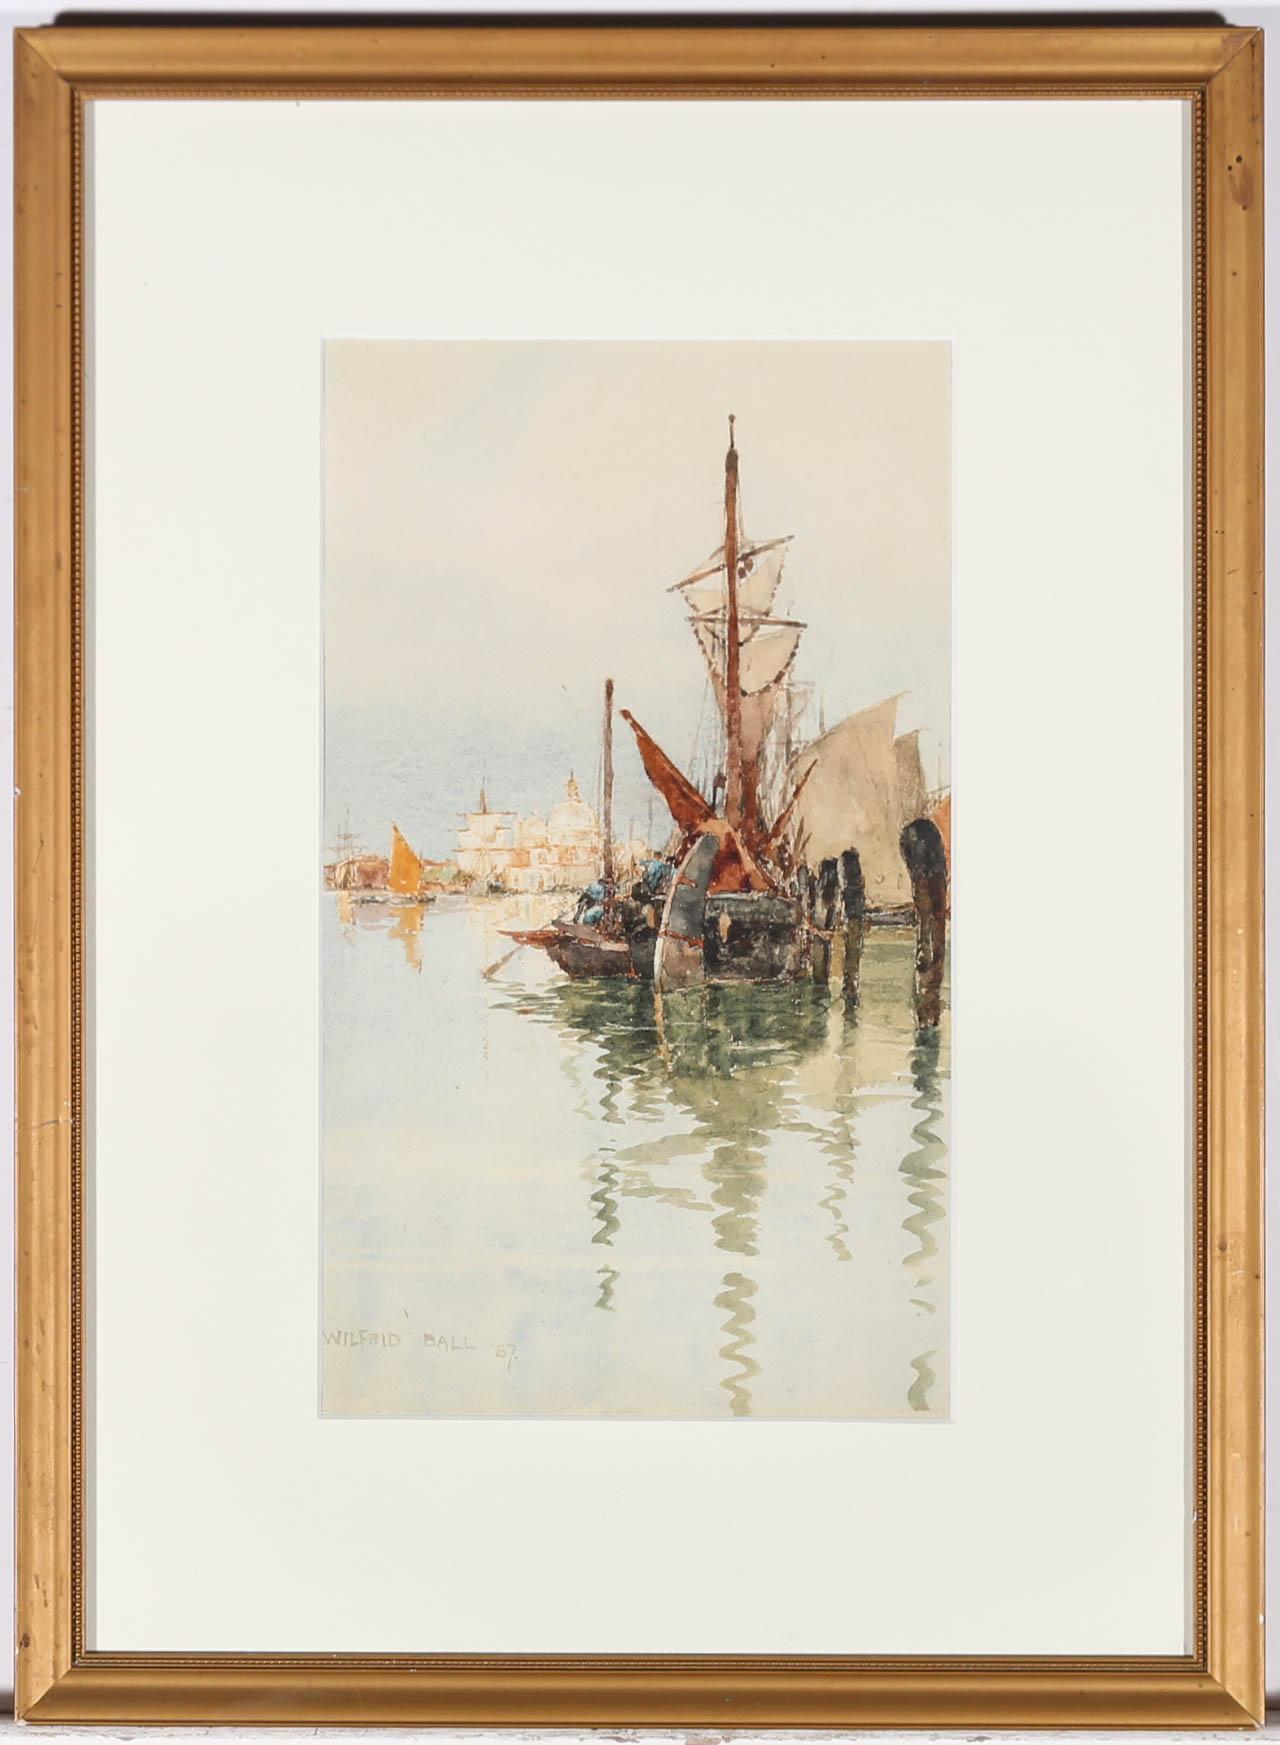 Très belle aquarelle de Wilfrid Williams Ball (1853-1917), intitulée "Santa-Maria Della Salute" et représentant des voiliers sur le grand canal de Venise. Le tableau est signé et daté dans le coin inférieur gauche. Avec la provenance de Robert